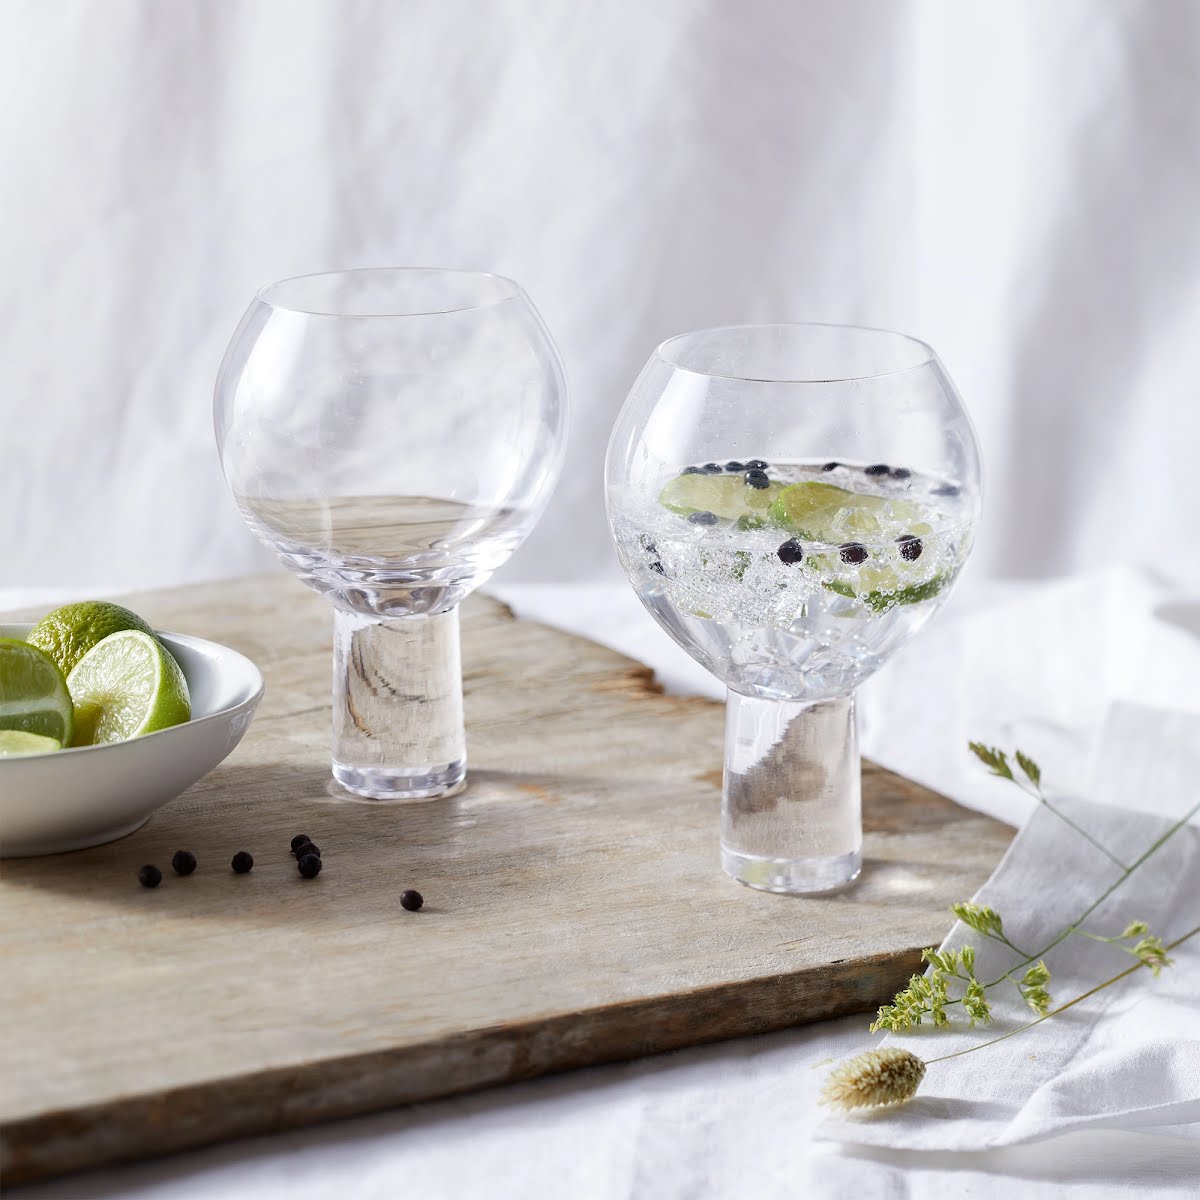 Halden gin glasses, €50, The White Company